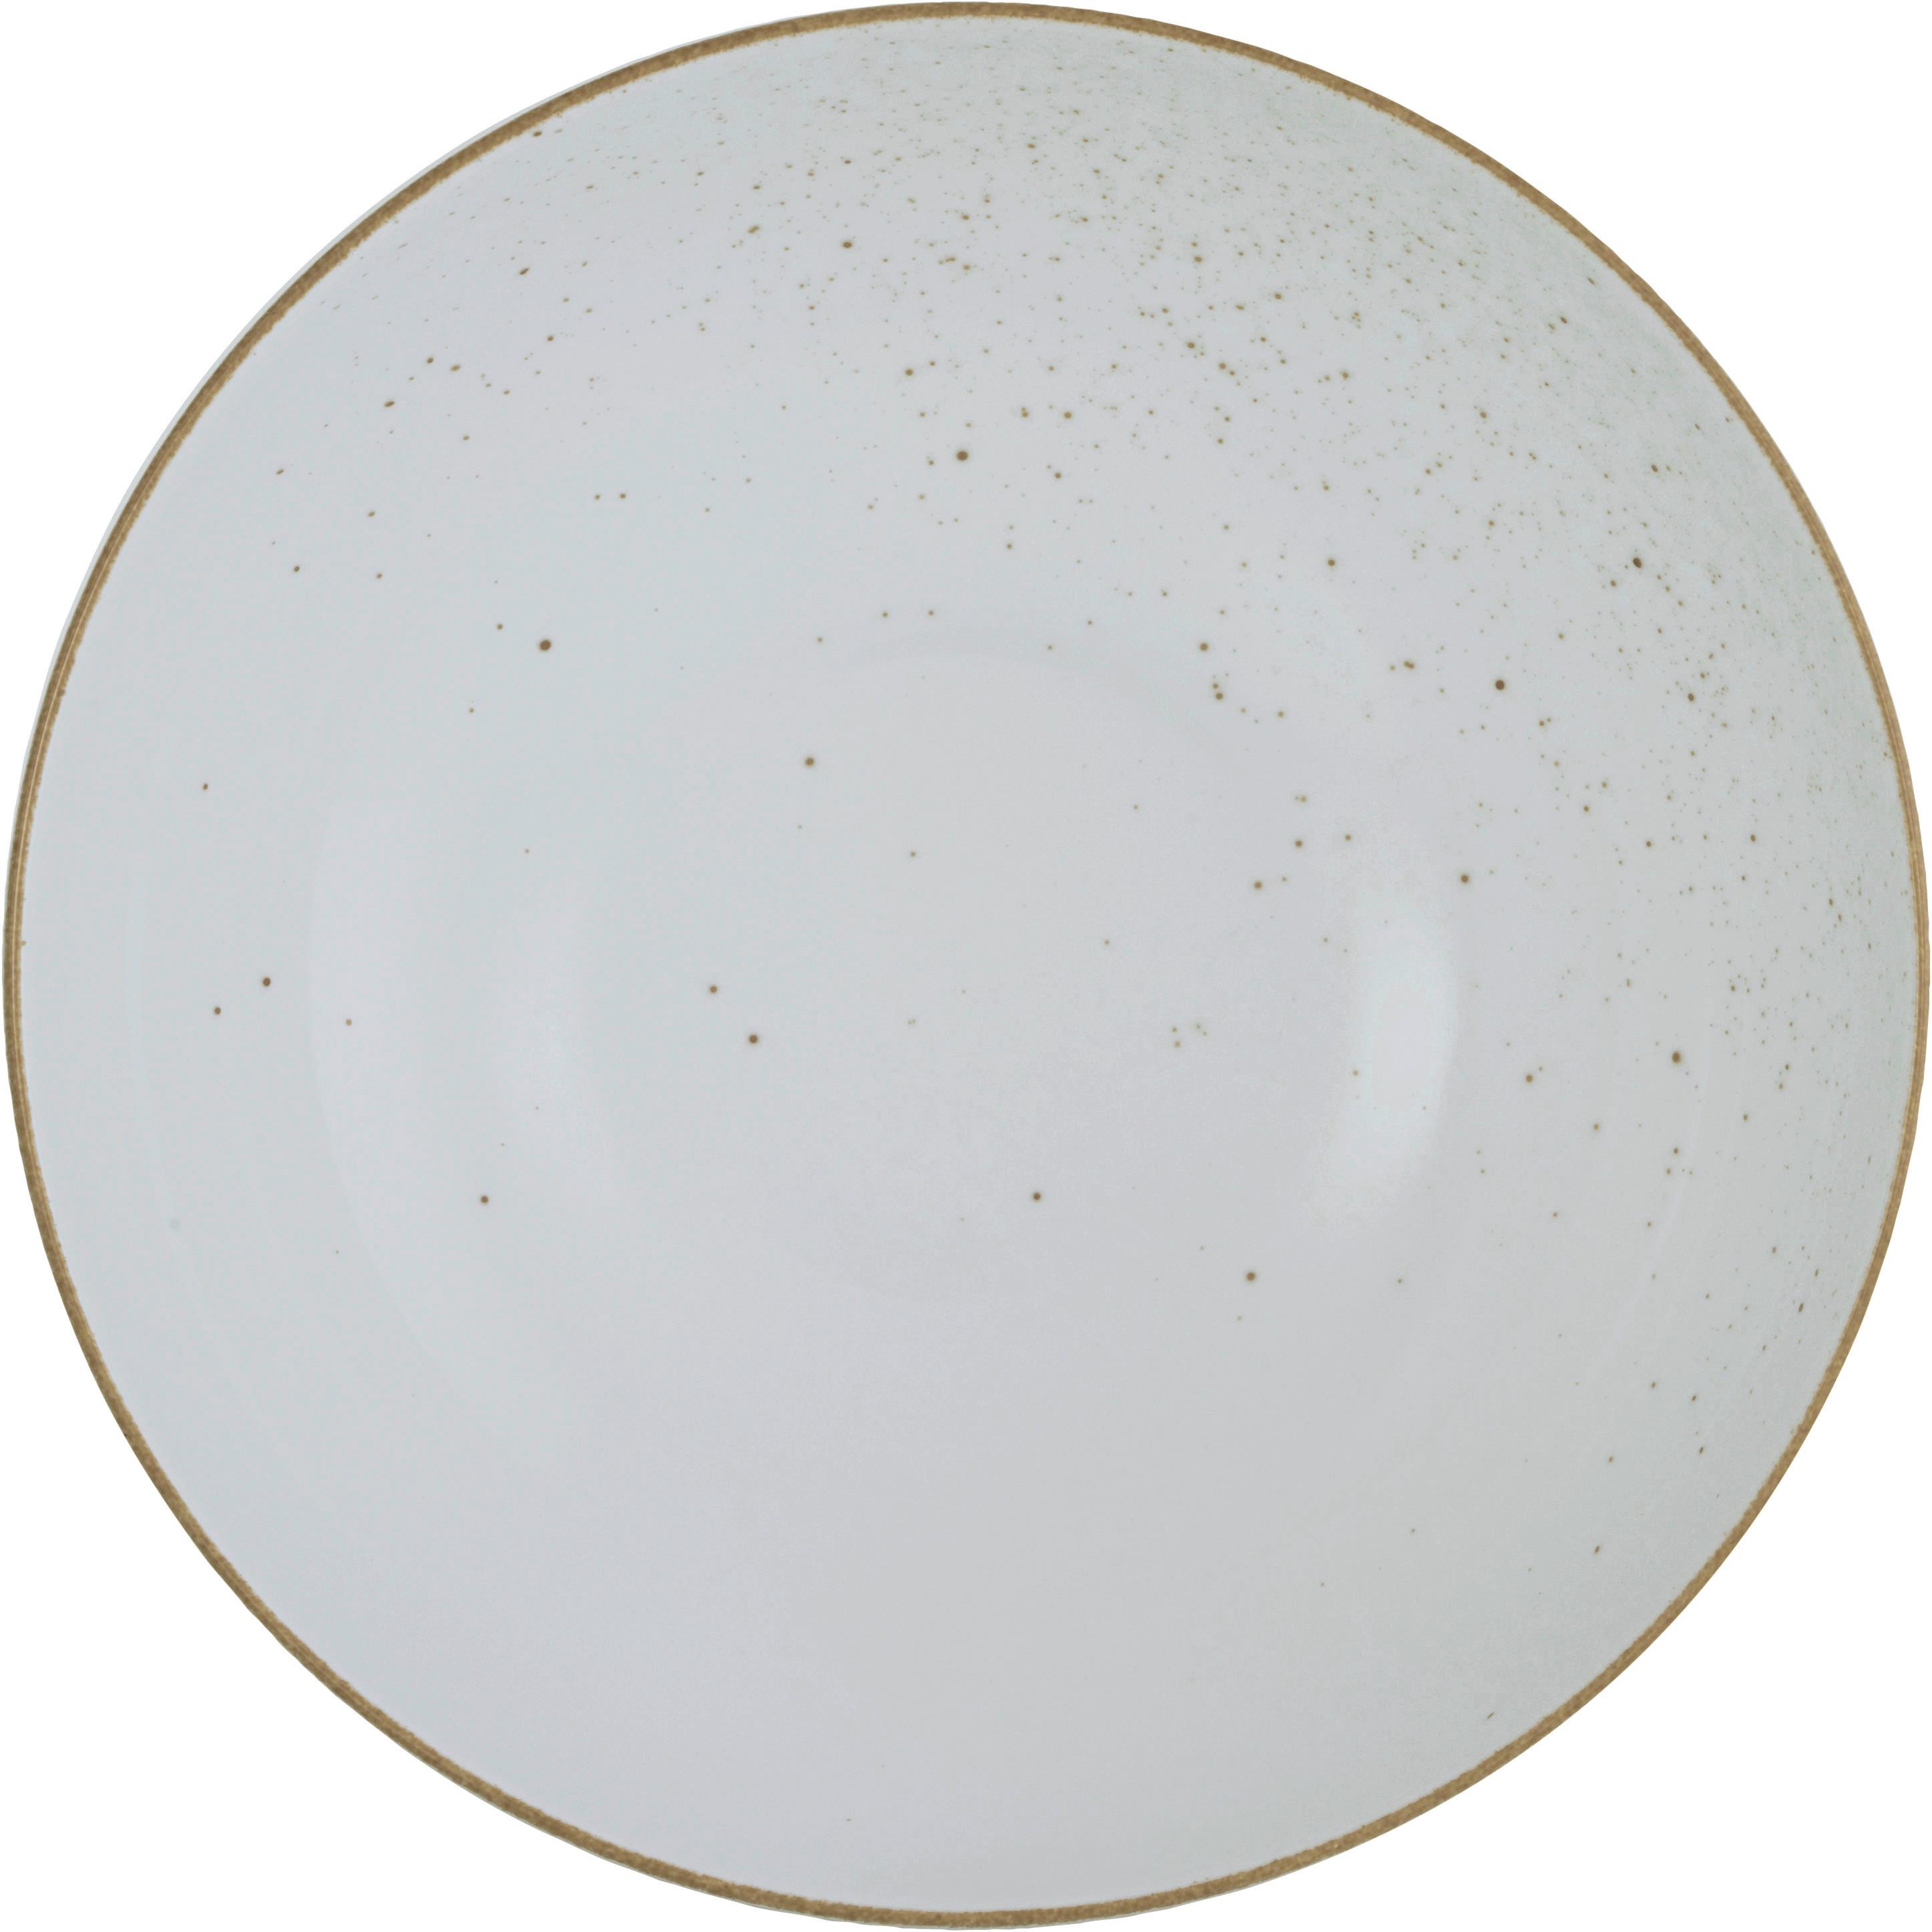 Salátová Mísa Capri, Ø: 25cm - bílá, Moderní, keramika (25/25/8cm) - Premium Living